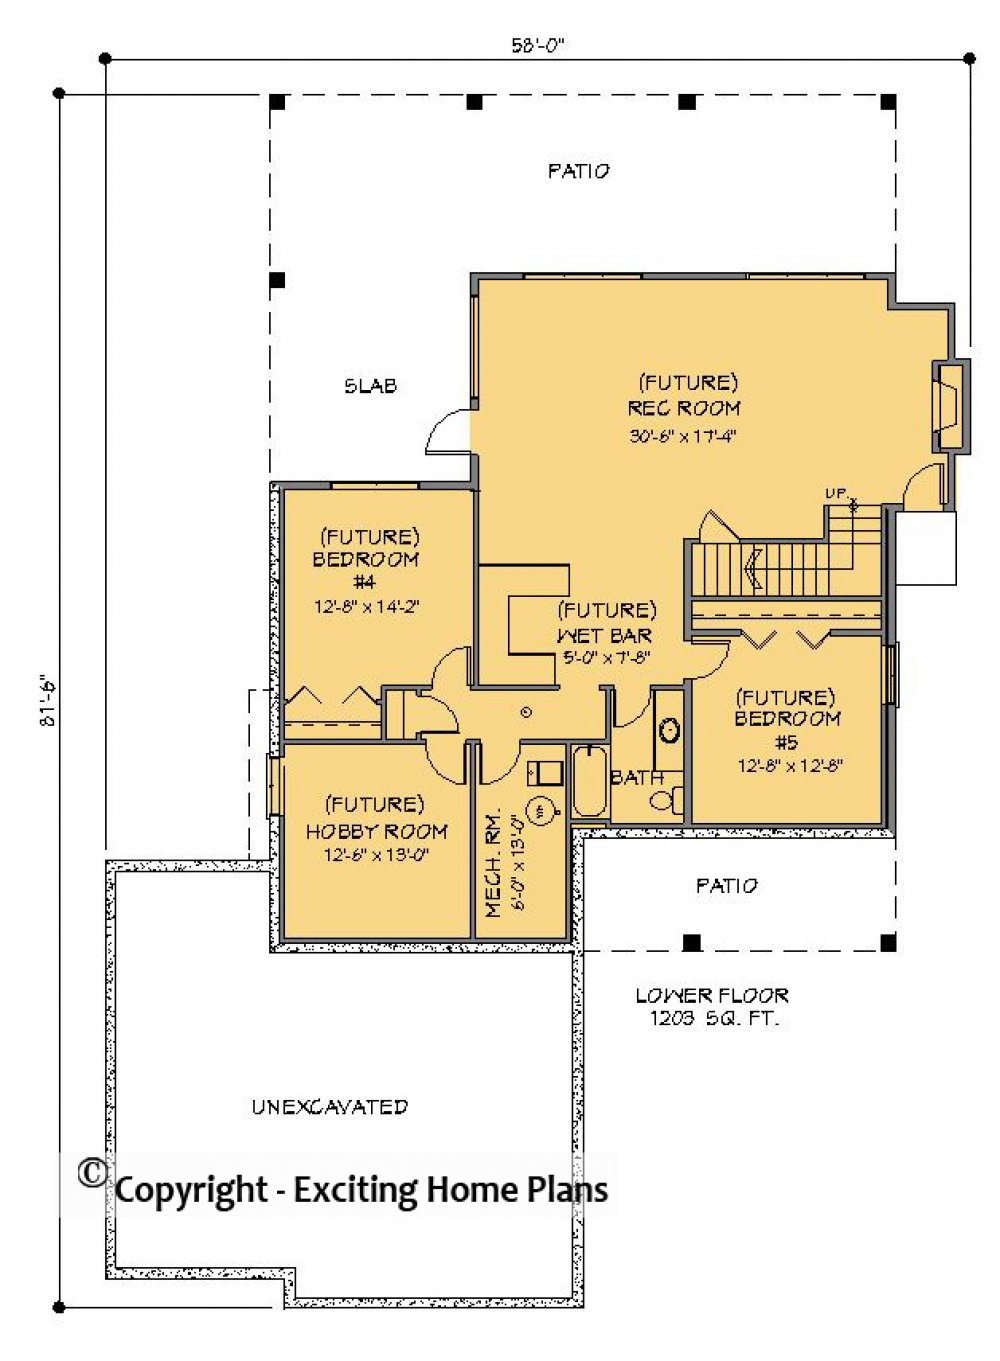 House Plan E1322-10 Lower Floor Plan